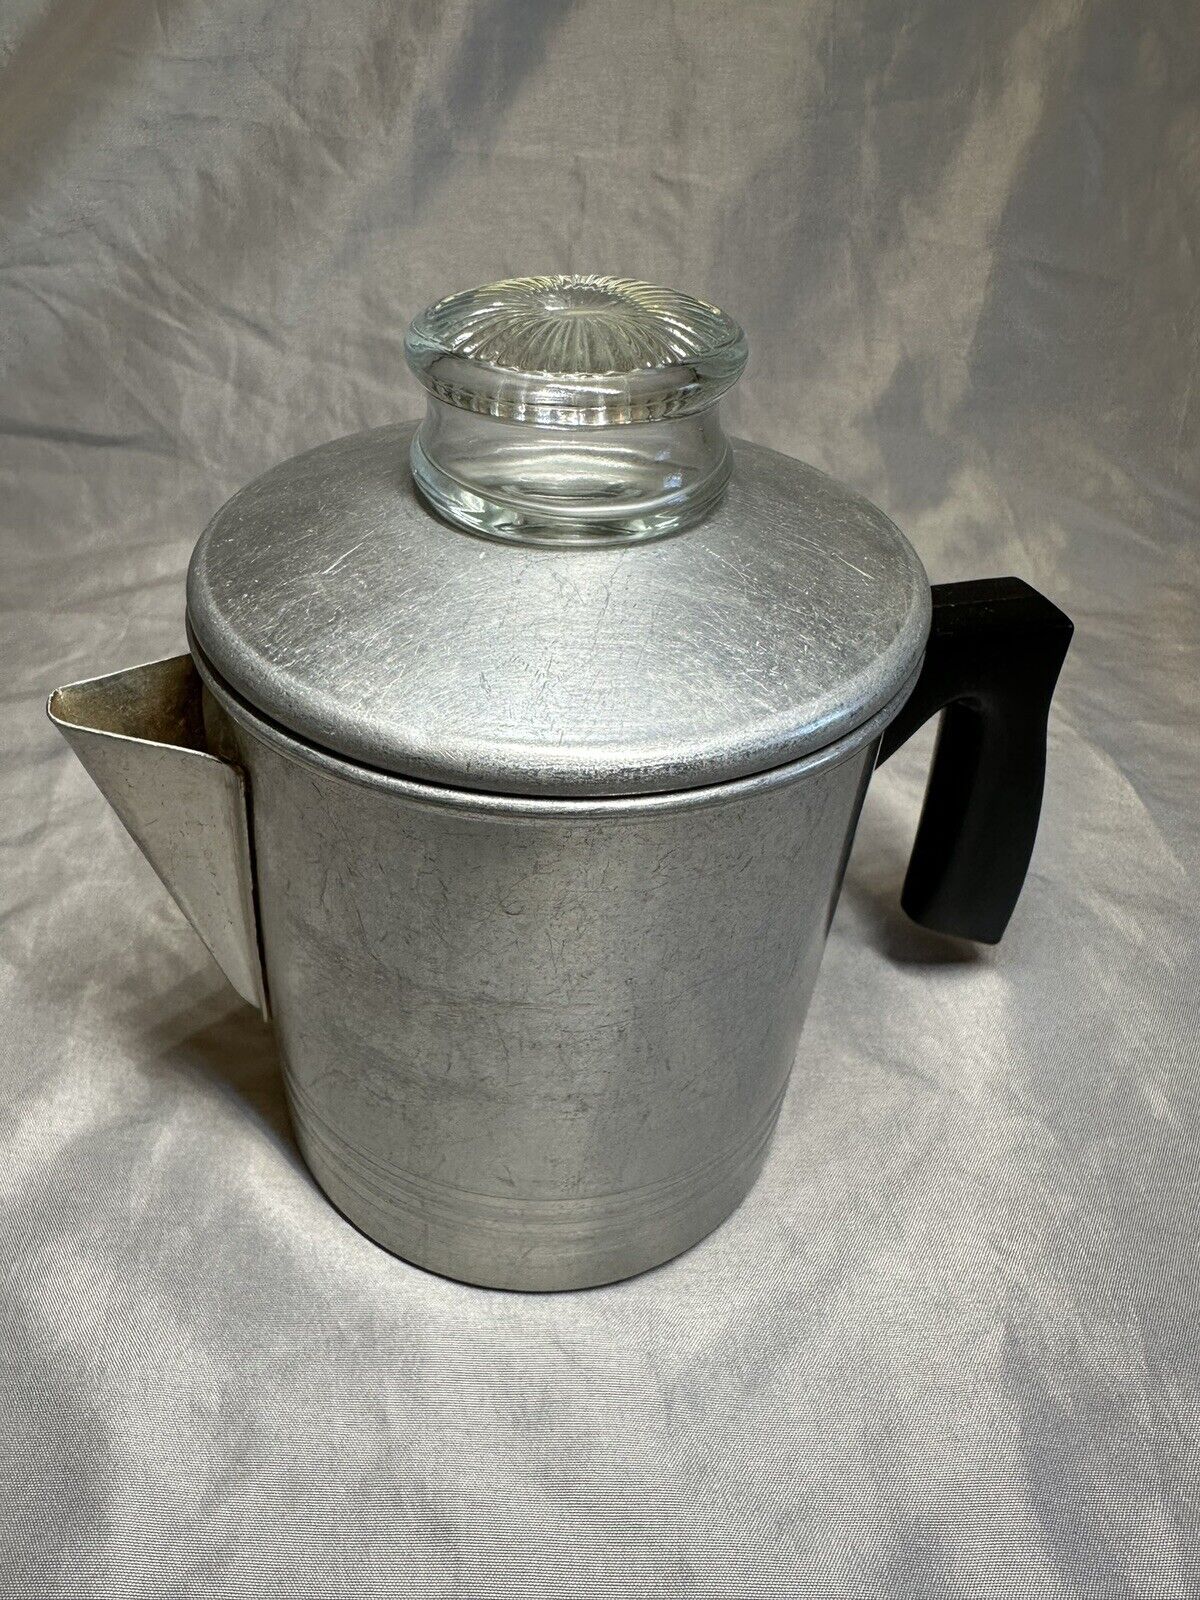 Chilton Ware Vintage Stove Top Percolator Aluminum Coffee Pot Camping RV 2 Cups